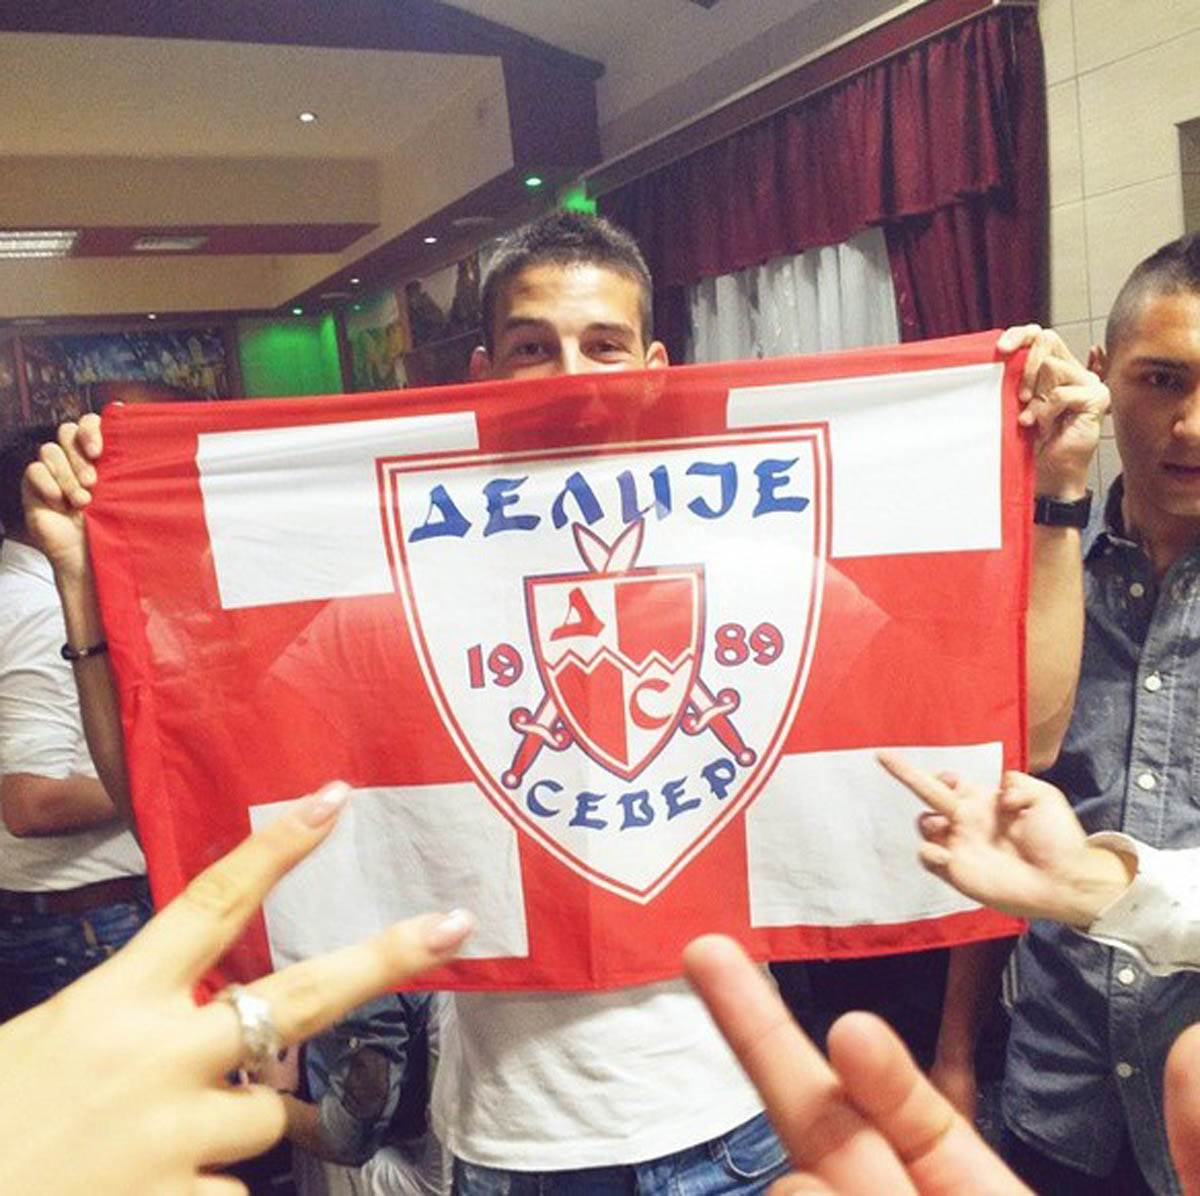  Ko je Andrija Majdevac navijač Zvezde fudbaler Napretka dao gol Partizanu 